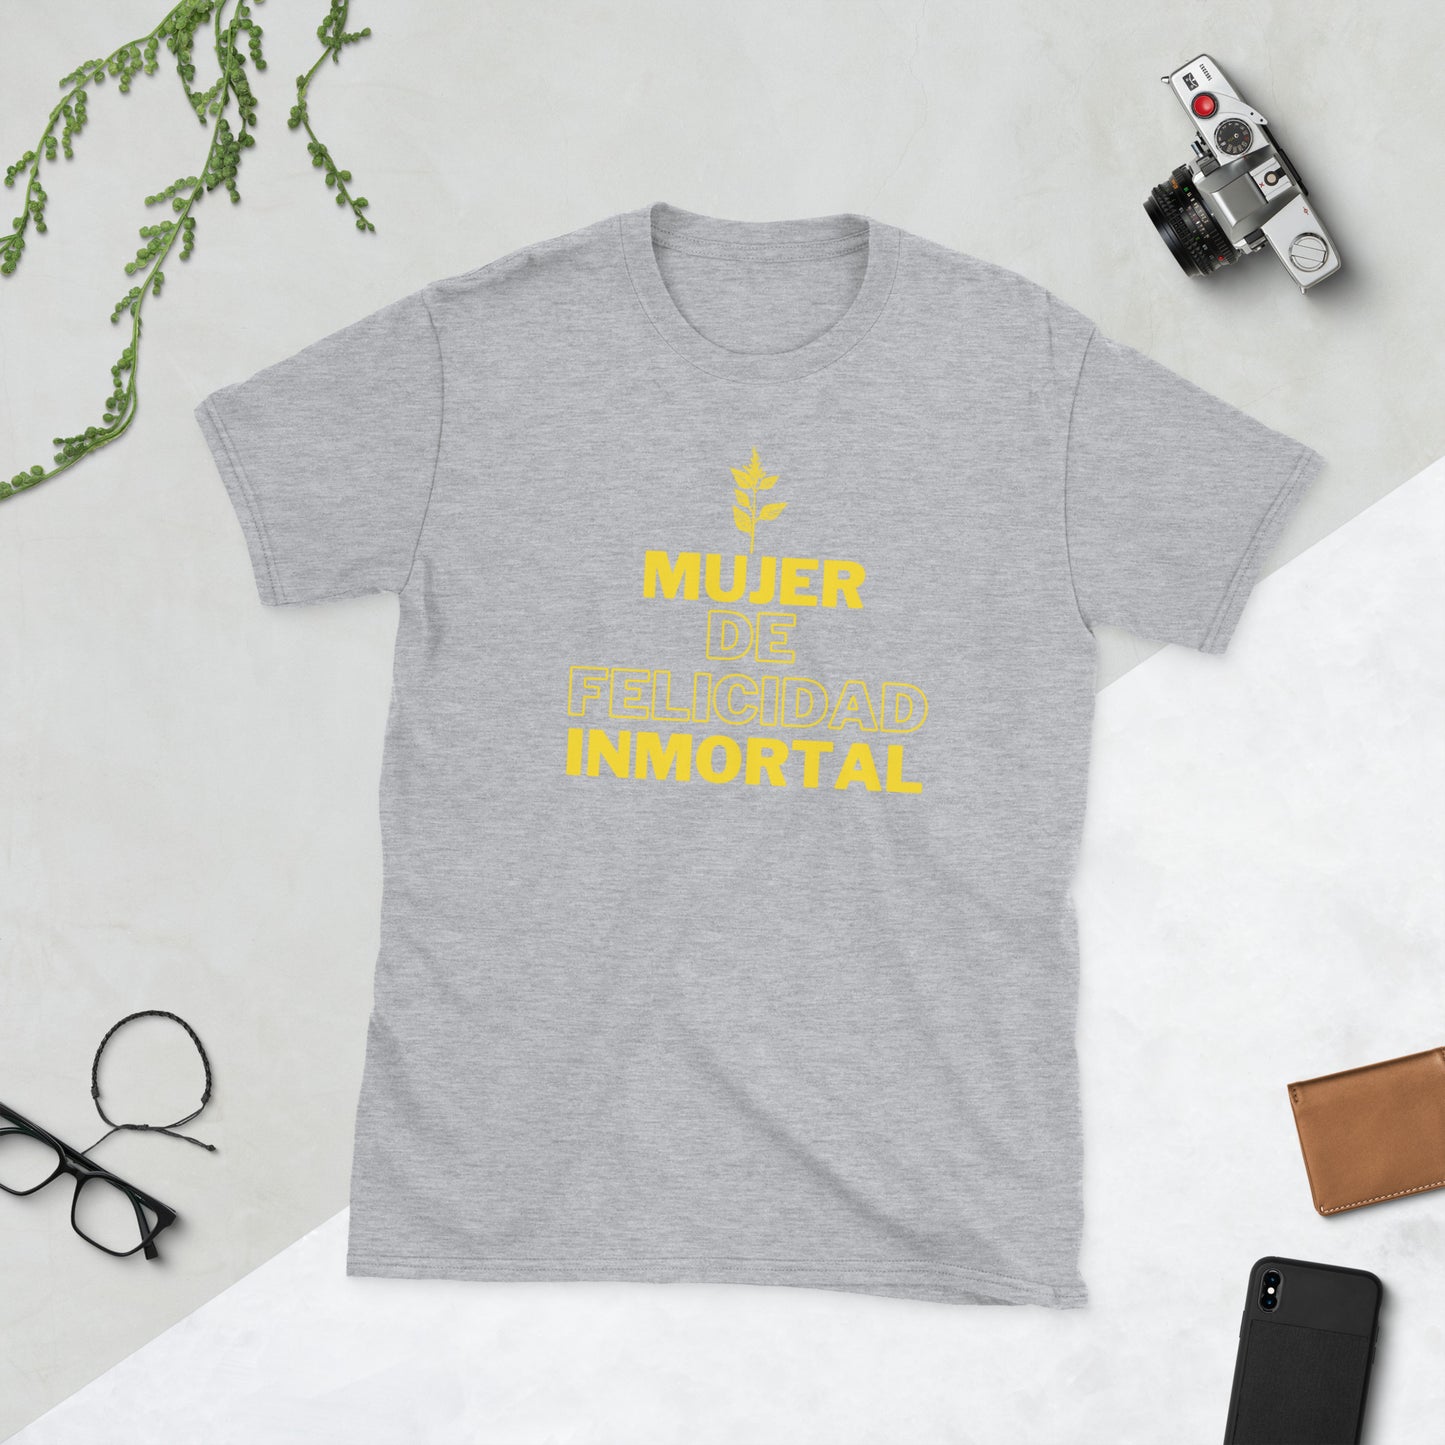 T-Shirt: Mujer de Felicidad Inmortal